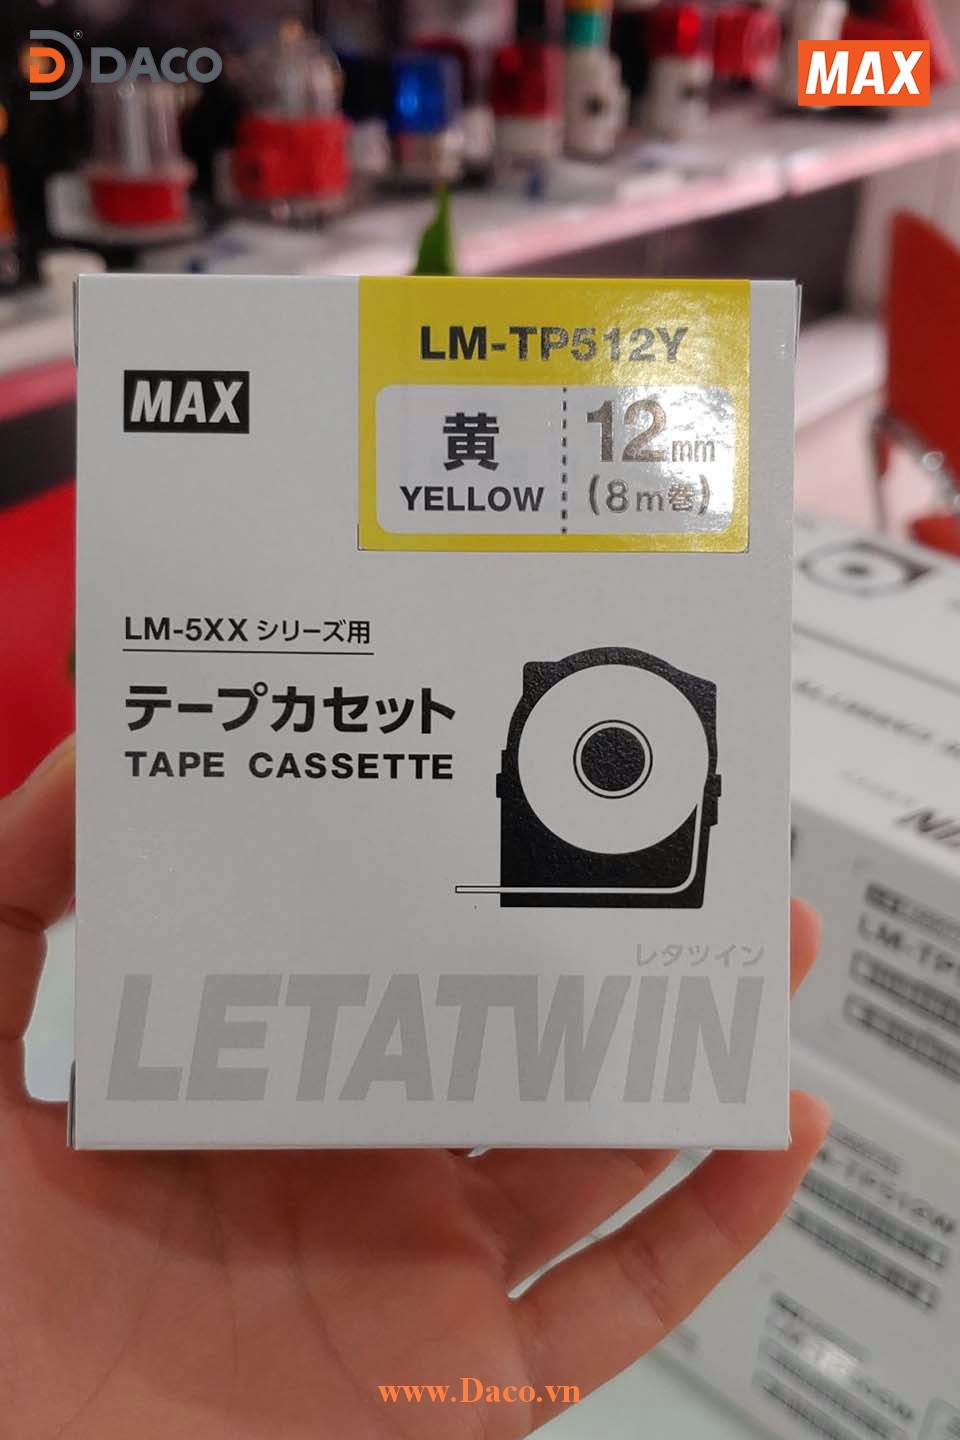 LM-TP512Y-8m Hình ảnh thực tế Băng nhãn in ống lồng đầu cốt luồn dây điện MAX Letatwin LM550A-LM550E: 12mm Màu Vàng